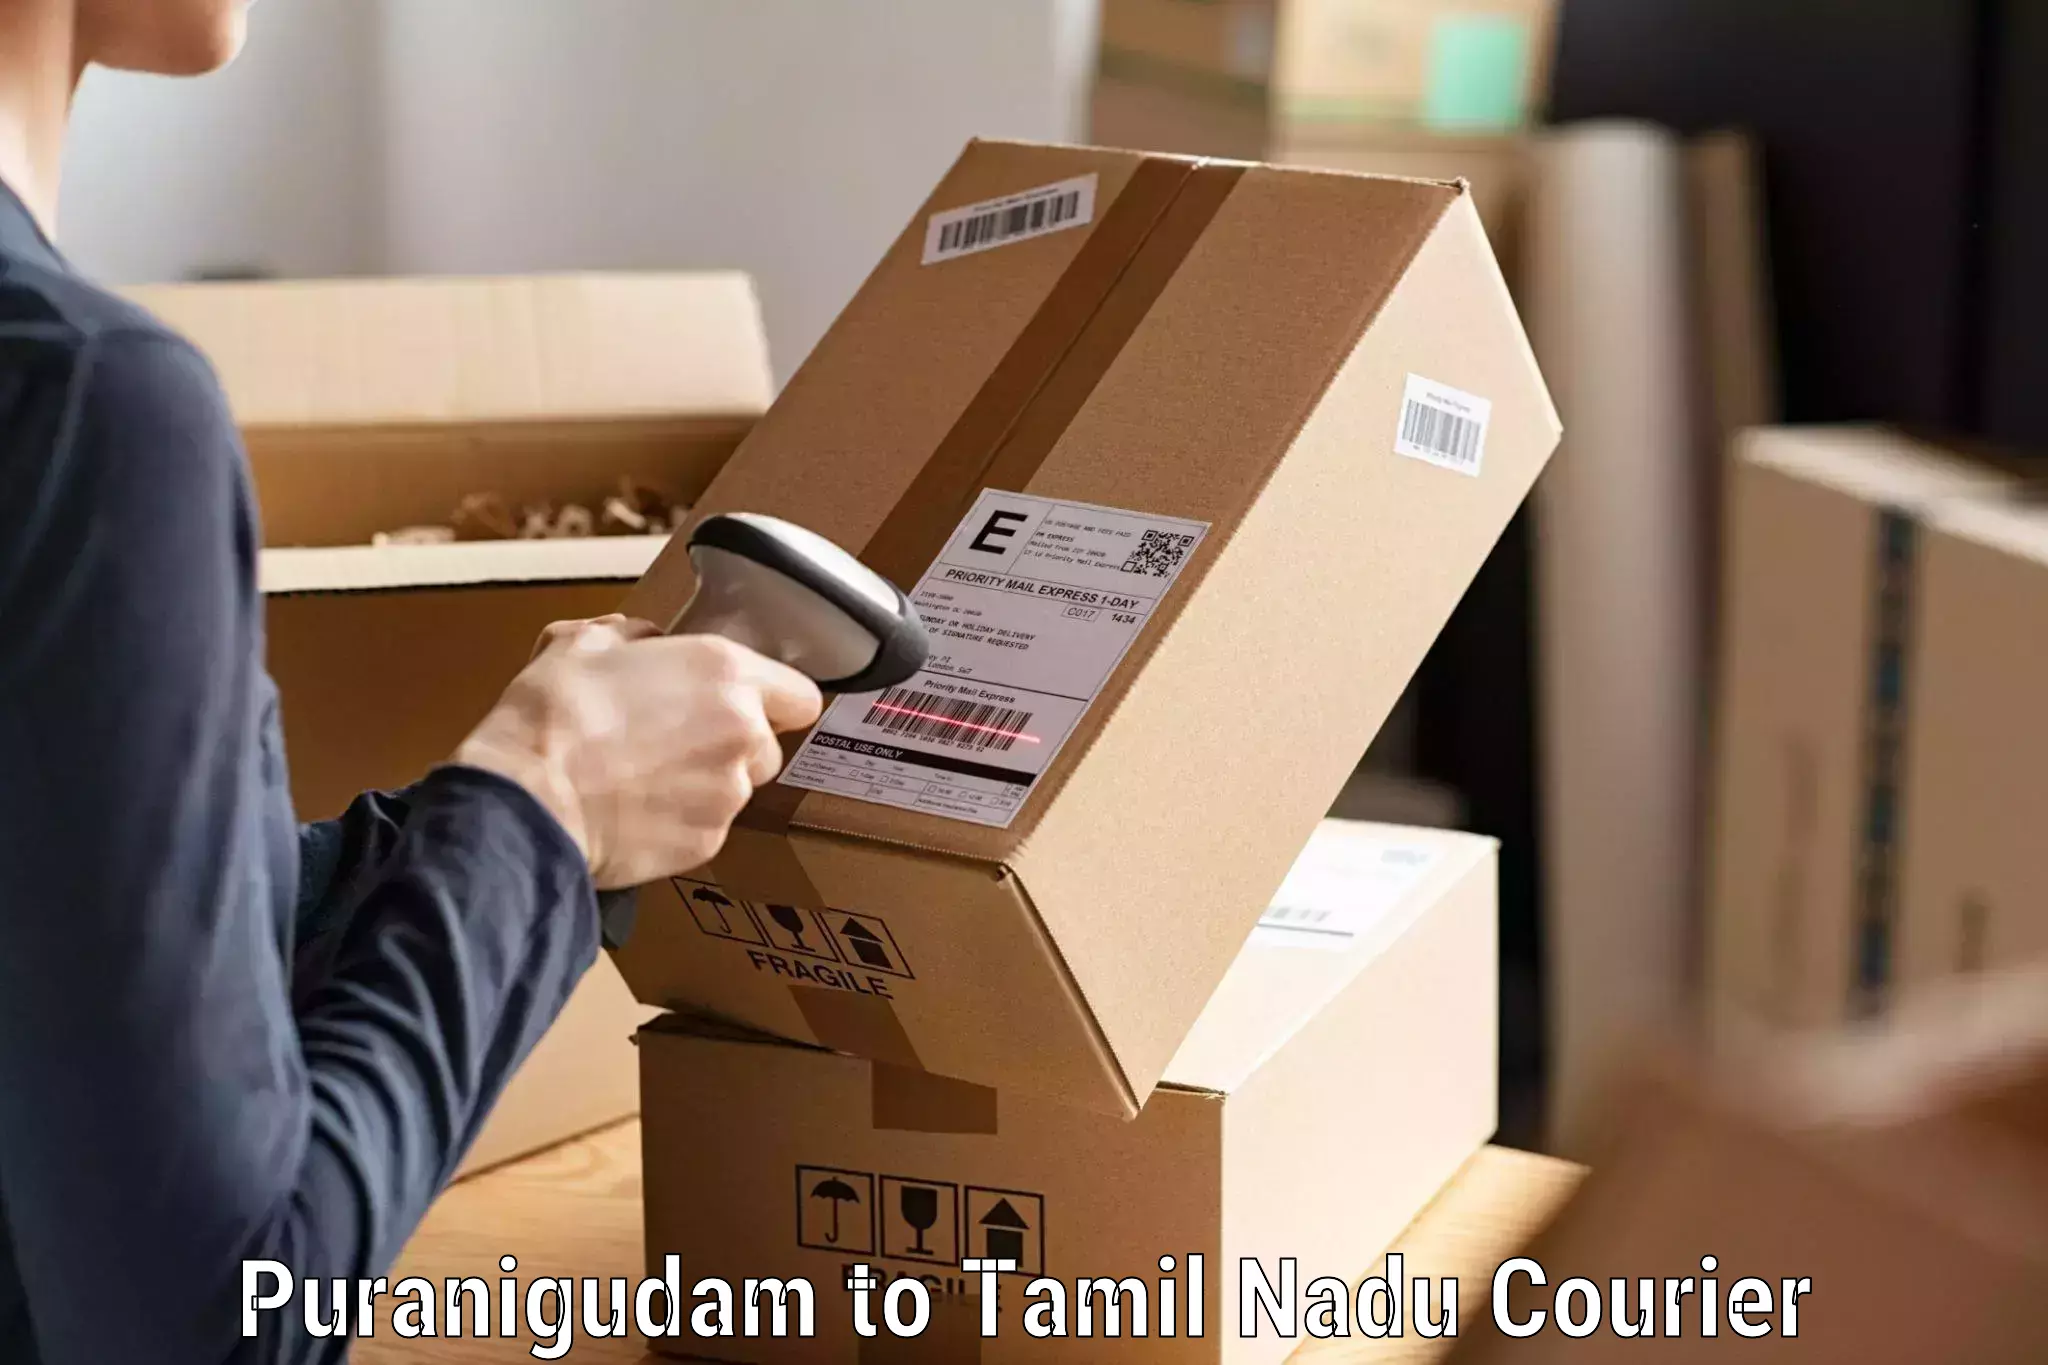 Modern courier technology Puranigudam to Amrita Vishwa Vidyapeetham Coimbatore